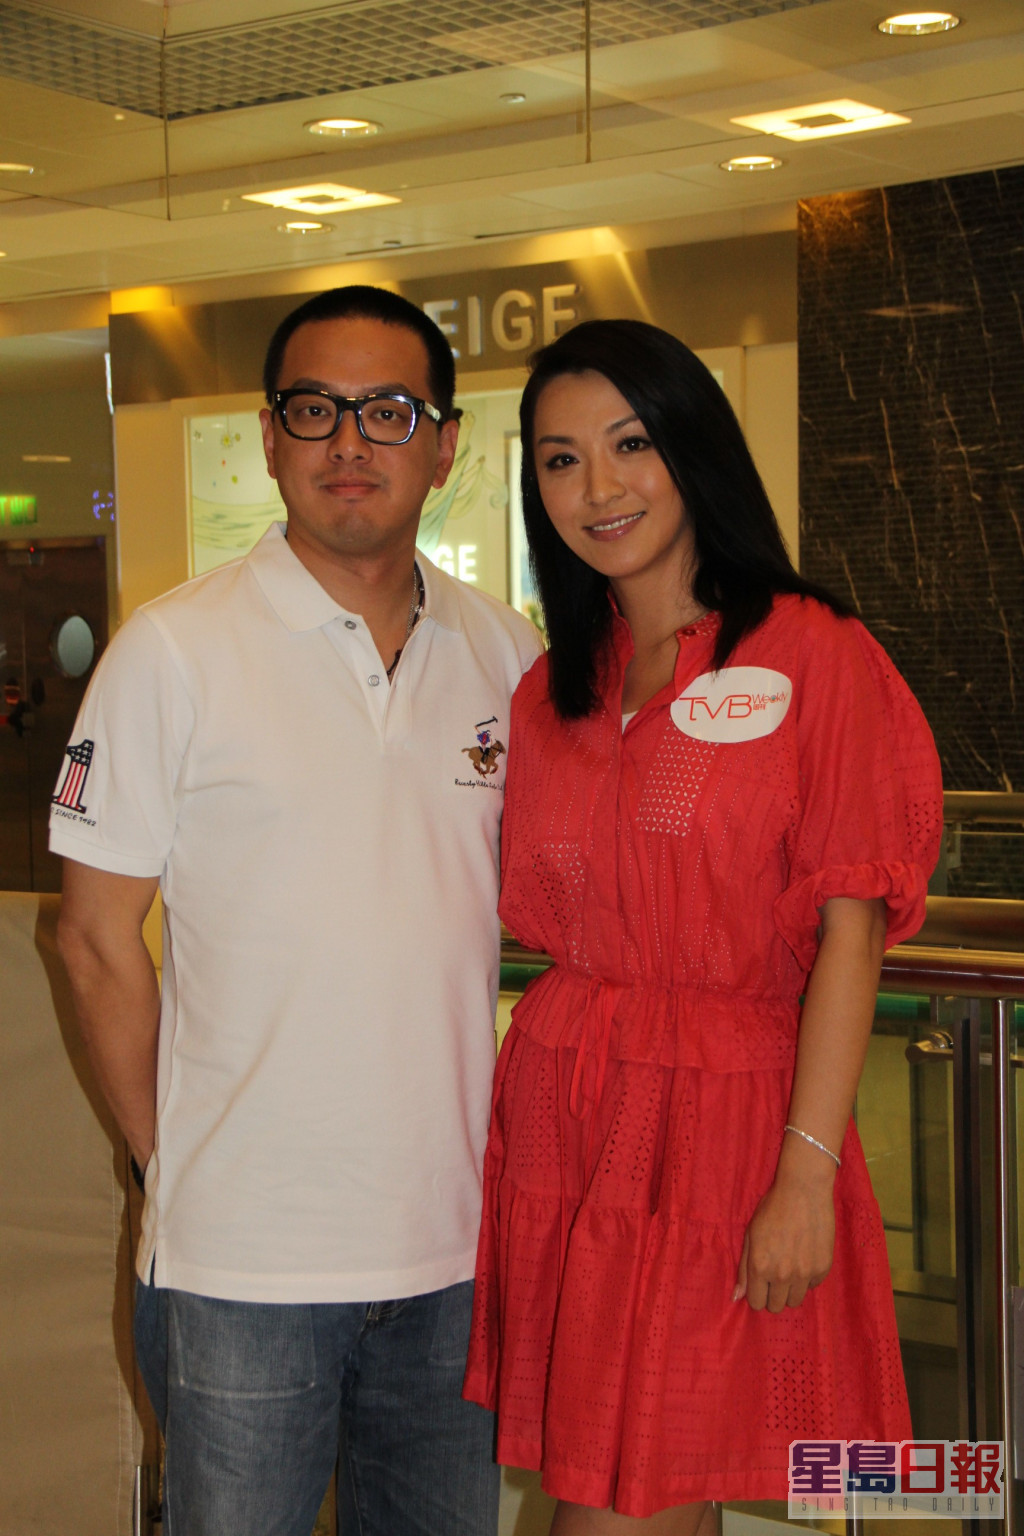 陳煒於2008年與比自己年輕3年的台灣富商顏志行結婚並宣佈息影。